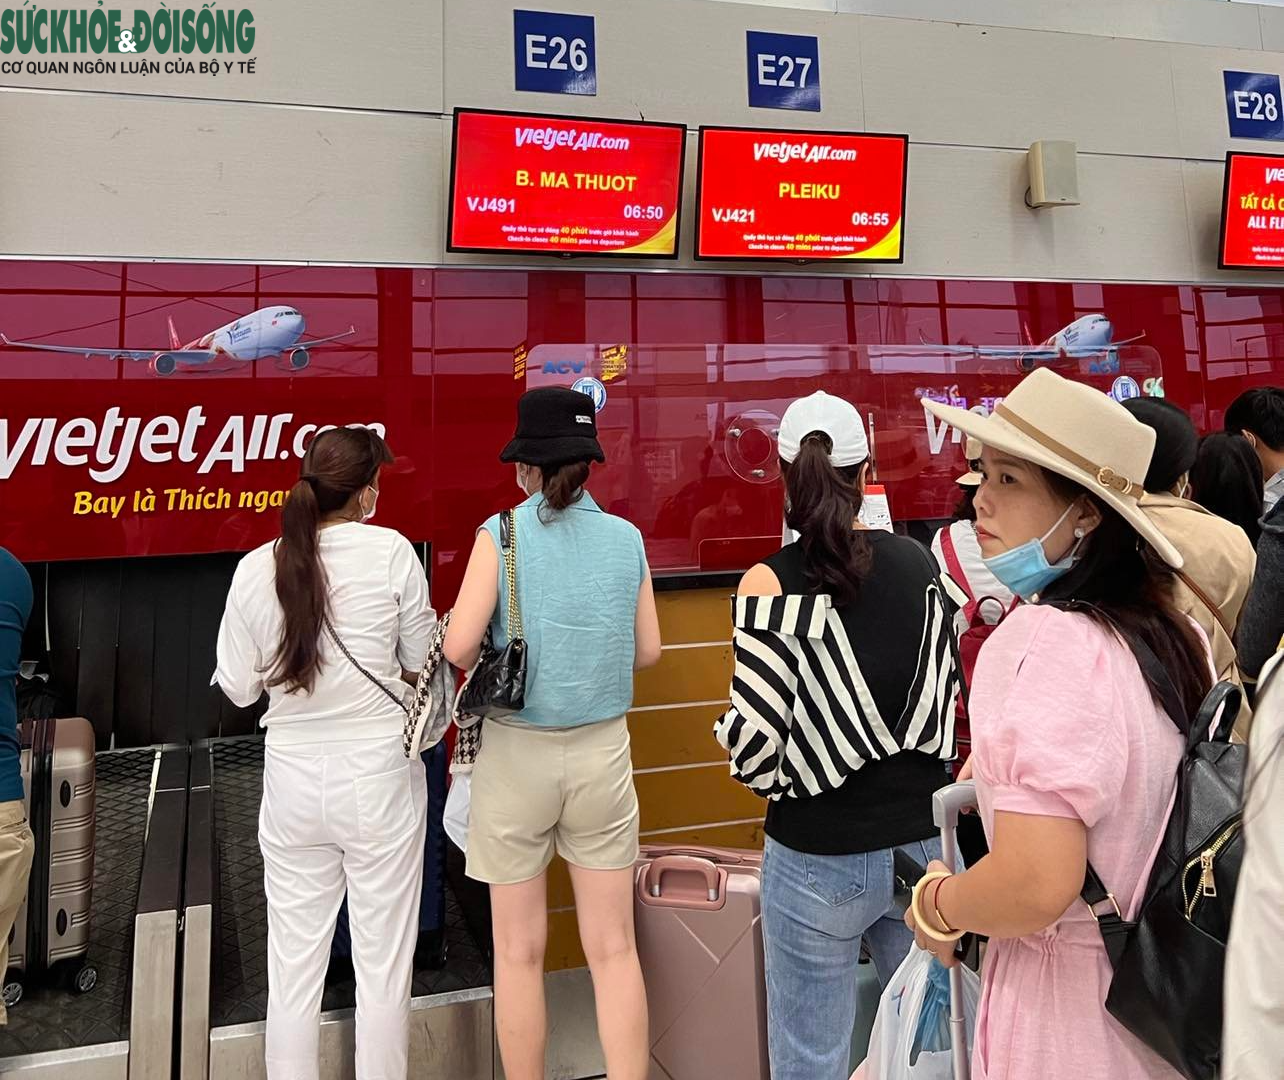 Sân bay Tân Sơn Nhất phá kỷ lục về lượt khách ngày mùng 4 Tết - Ảnh 3.